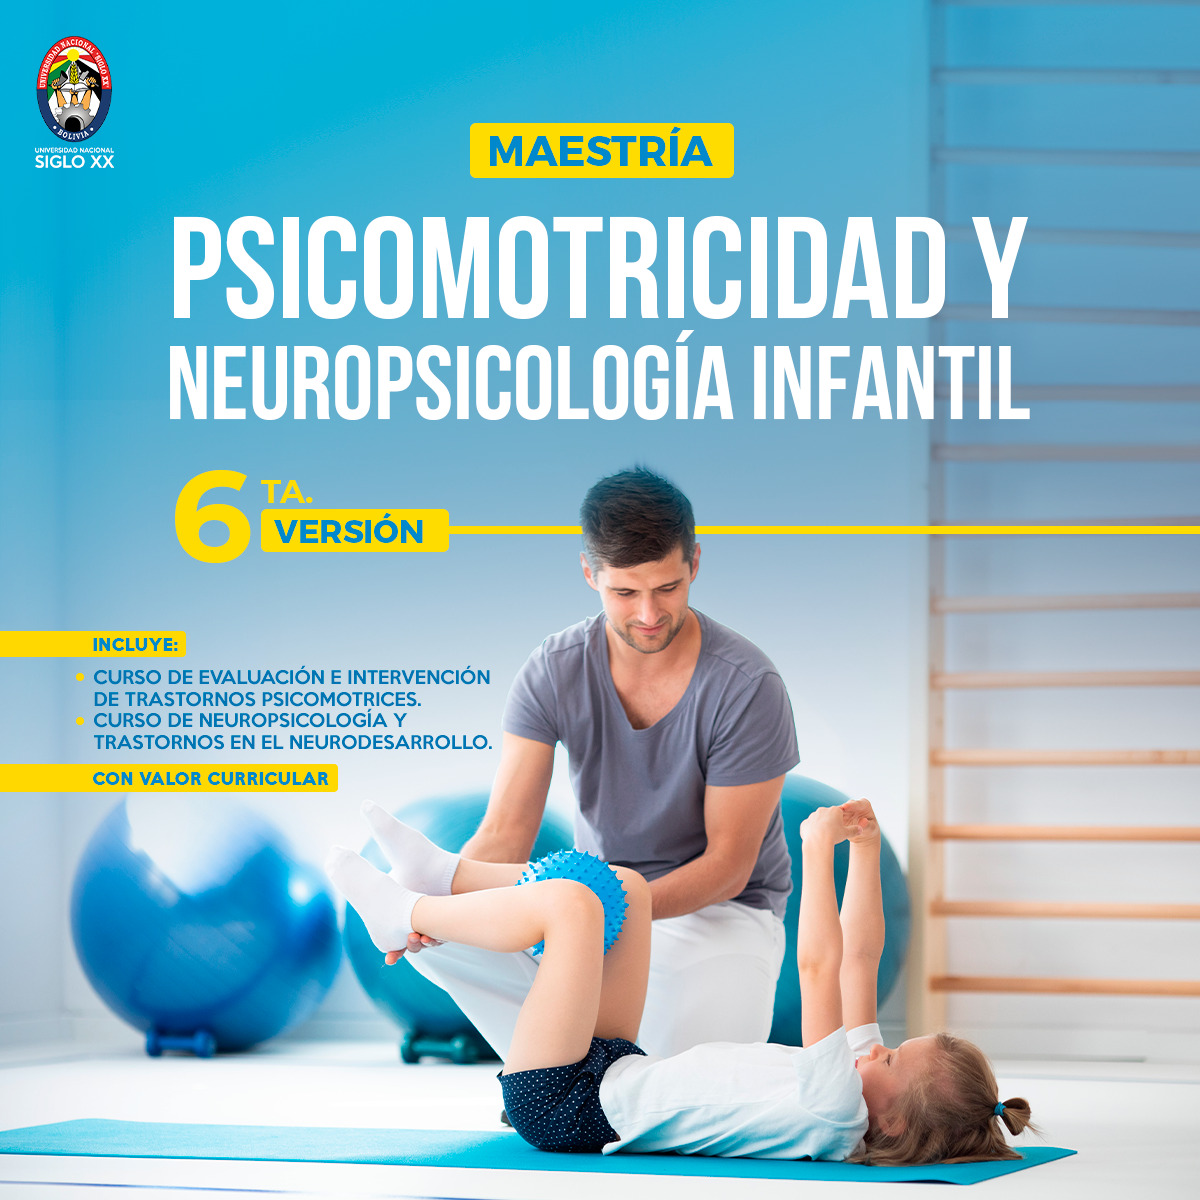 Maestría en Psicomotricidad y Neuropsicología Infantil.